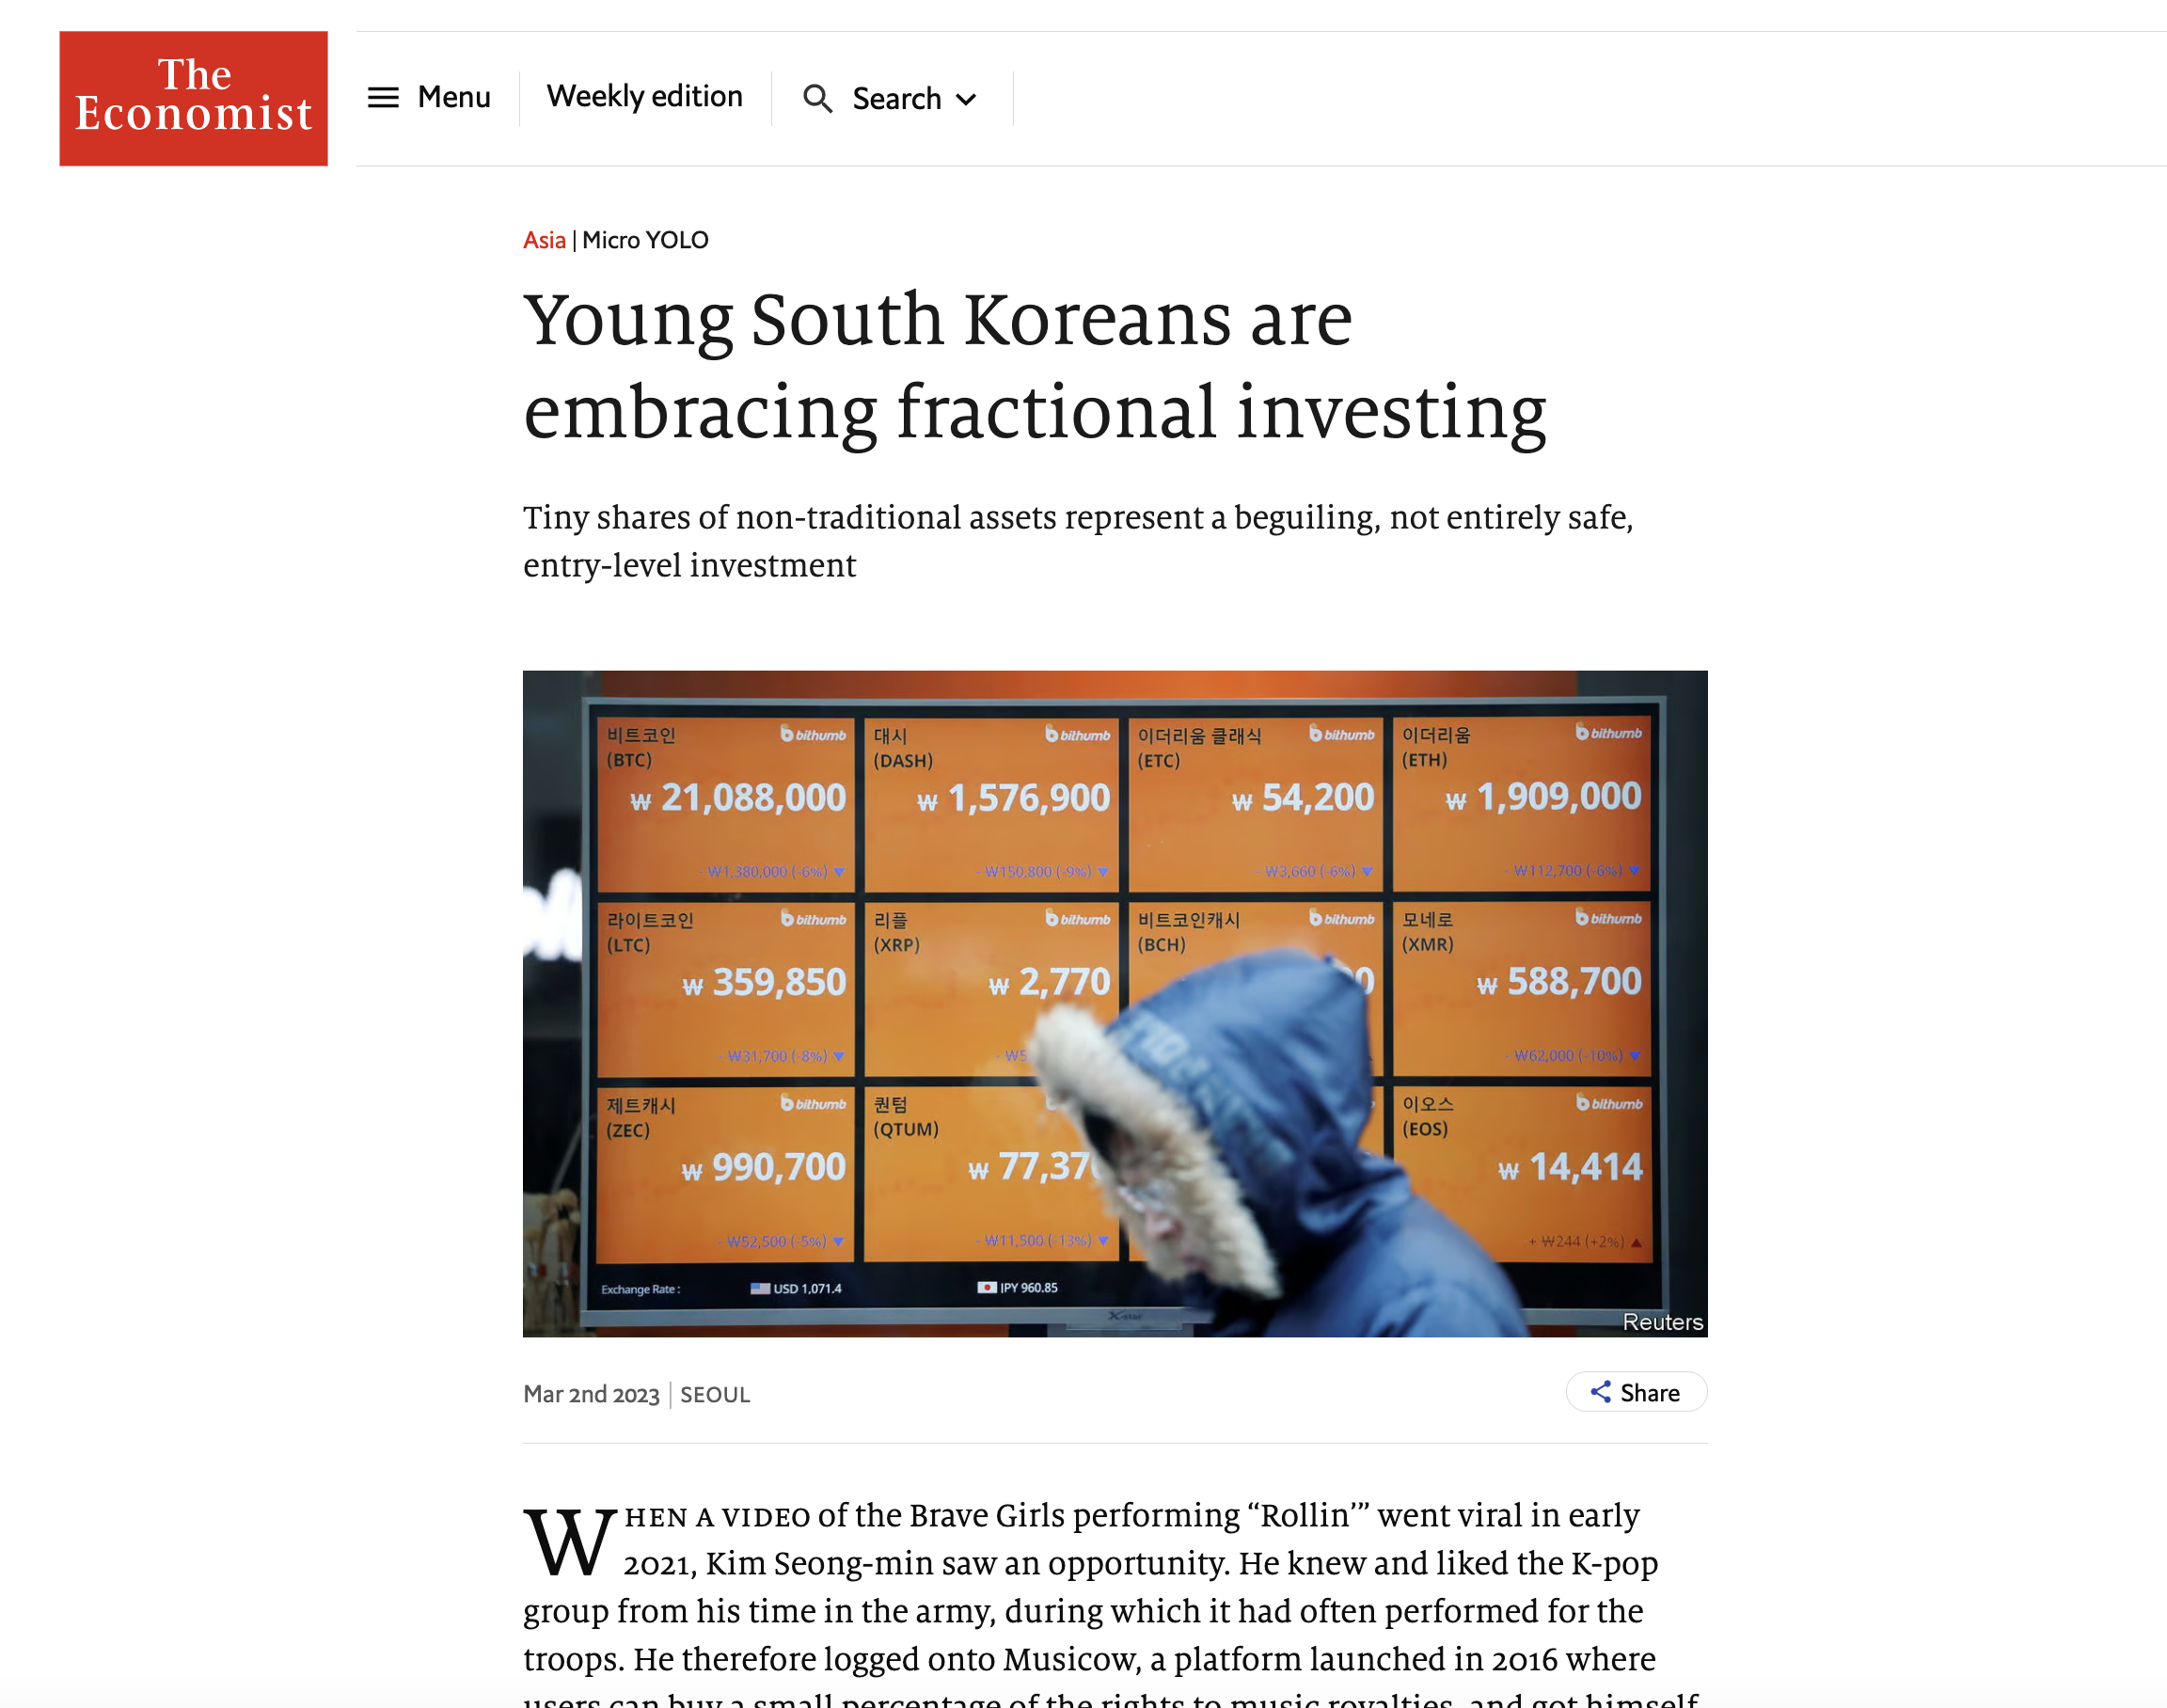 마이크로-욜로-부분투자-열광-한국-젊은이들-이코노미스트